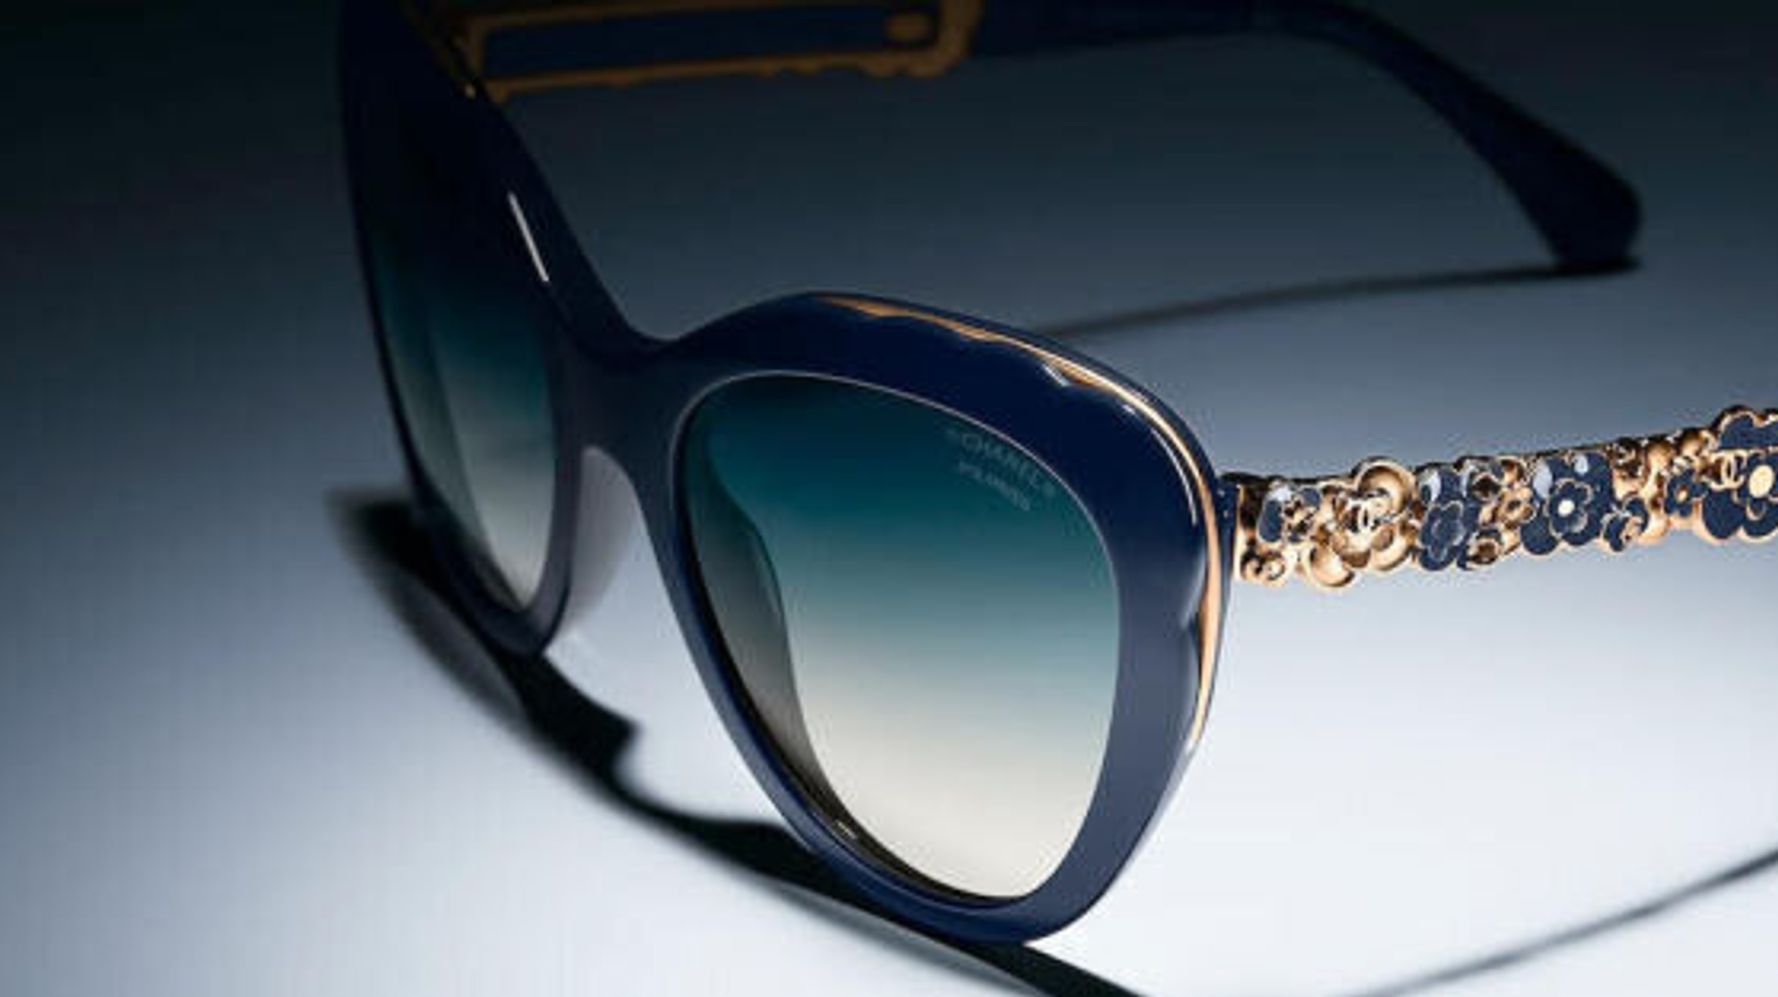 Camélias et glamour à l'italienne pour les lunettes bijoux de Chanel